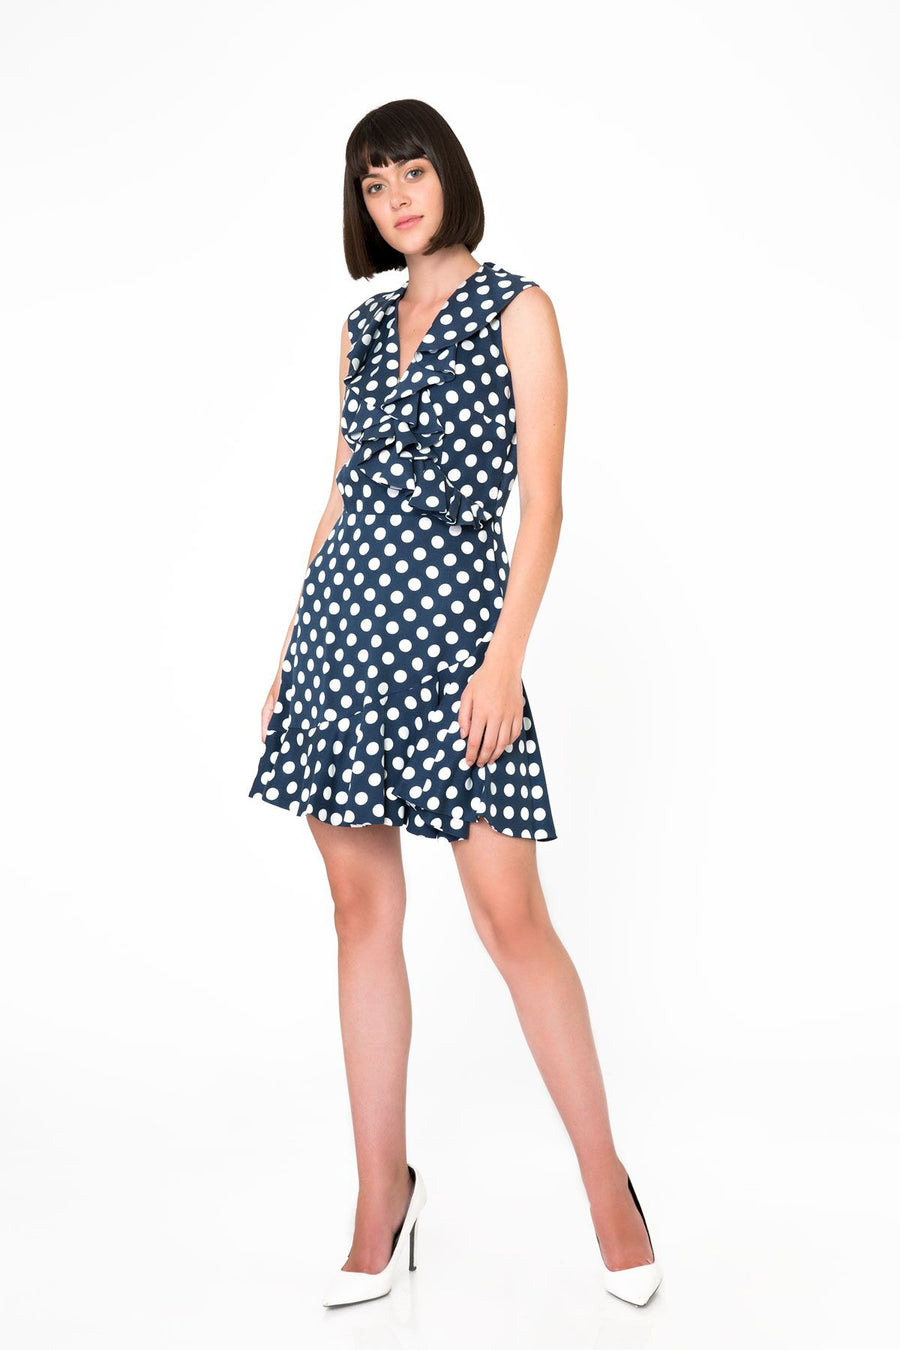 Polka Dot Patterned Navy Blue Mini Dress | Porterist